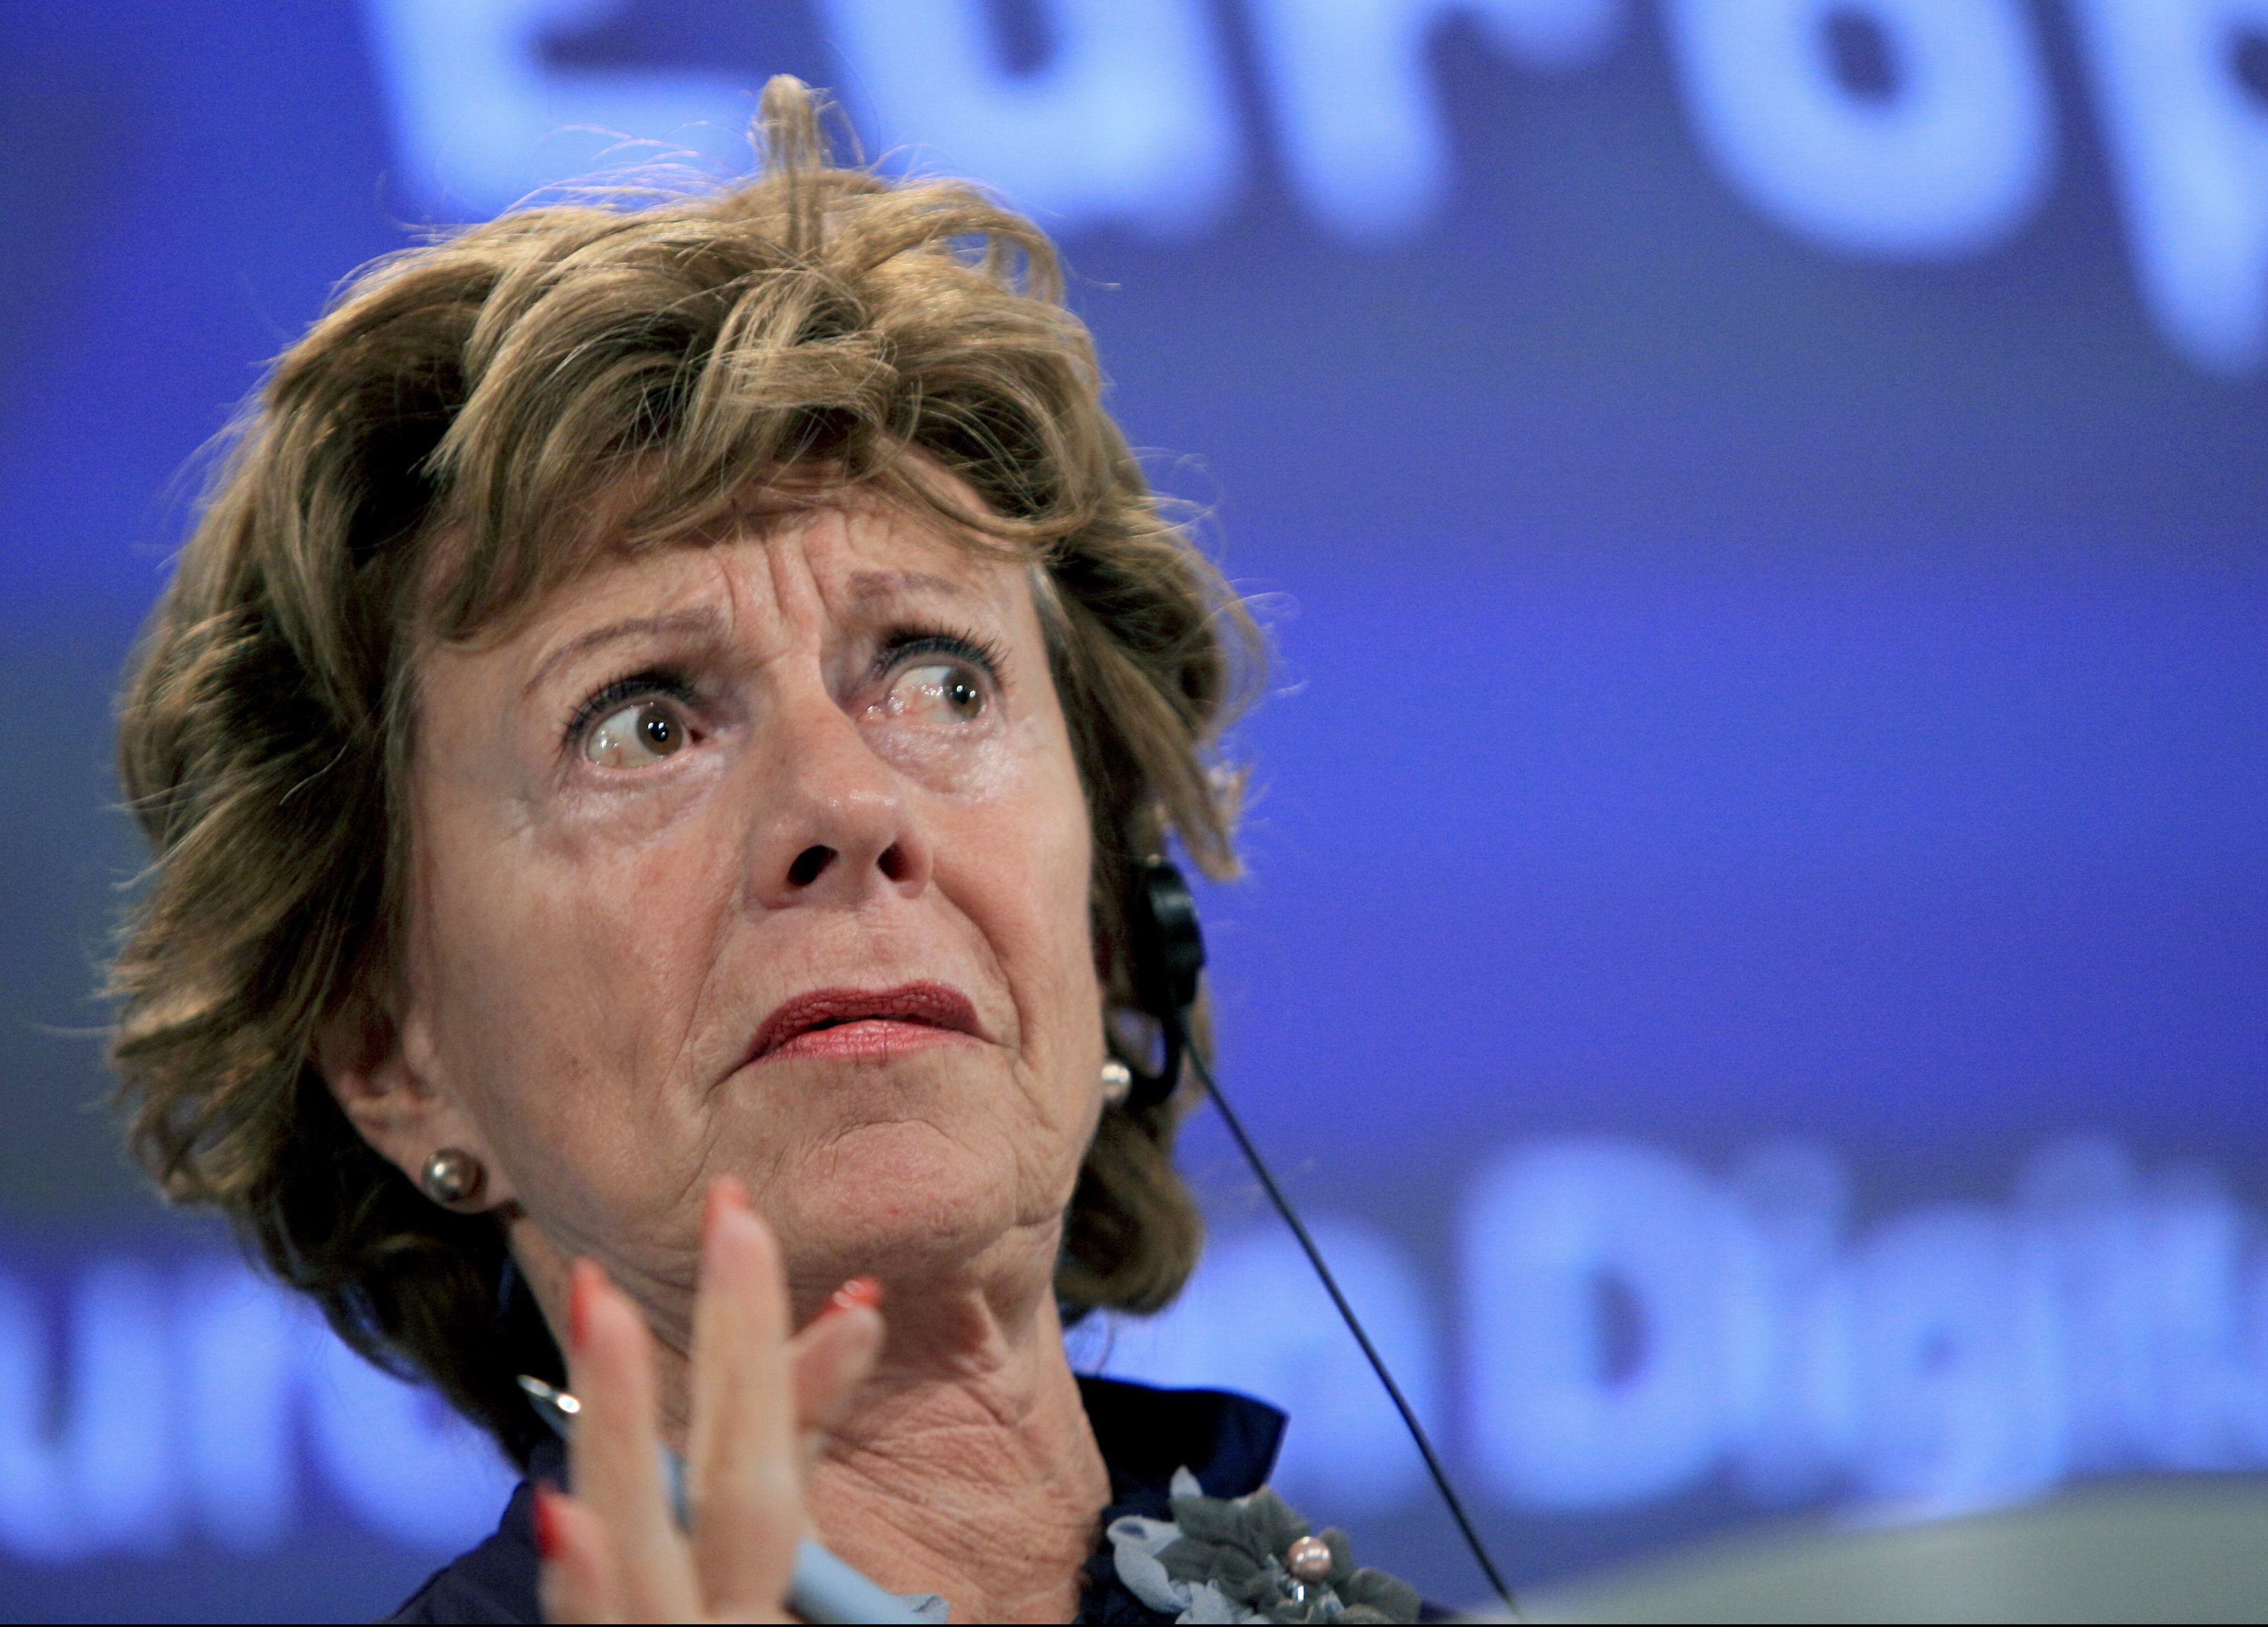 Oud-EU-commissaris Neelie Kroes kon "in redelijkheid" niet weten dat ze van 2000 tot 2009 als bestuurder stond ingeschreven van een bedrijf op de Bahama's. Ze was vanaf 2004 ook EU-commissaris, en dus had ze die functie door moeten geven.